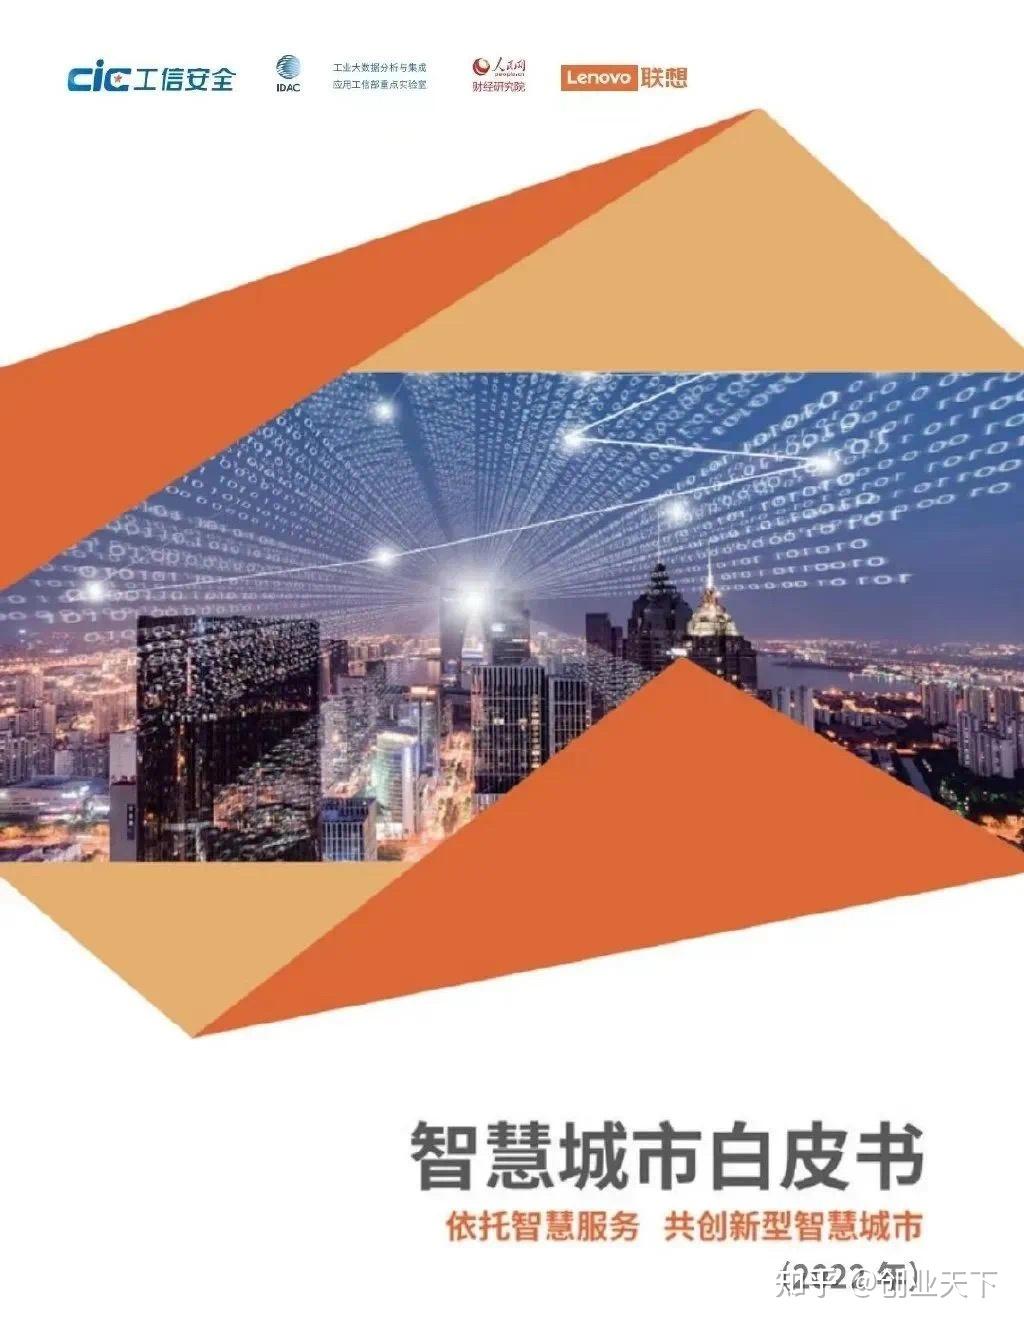 重庆：5G 网络建设引领生活方式变革，打造智慧城市新名片  第7张